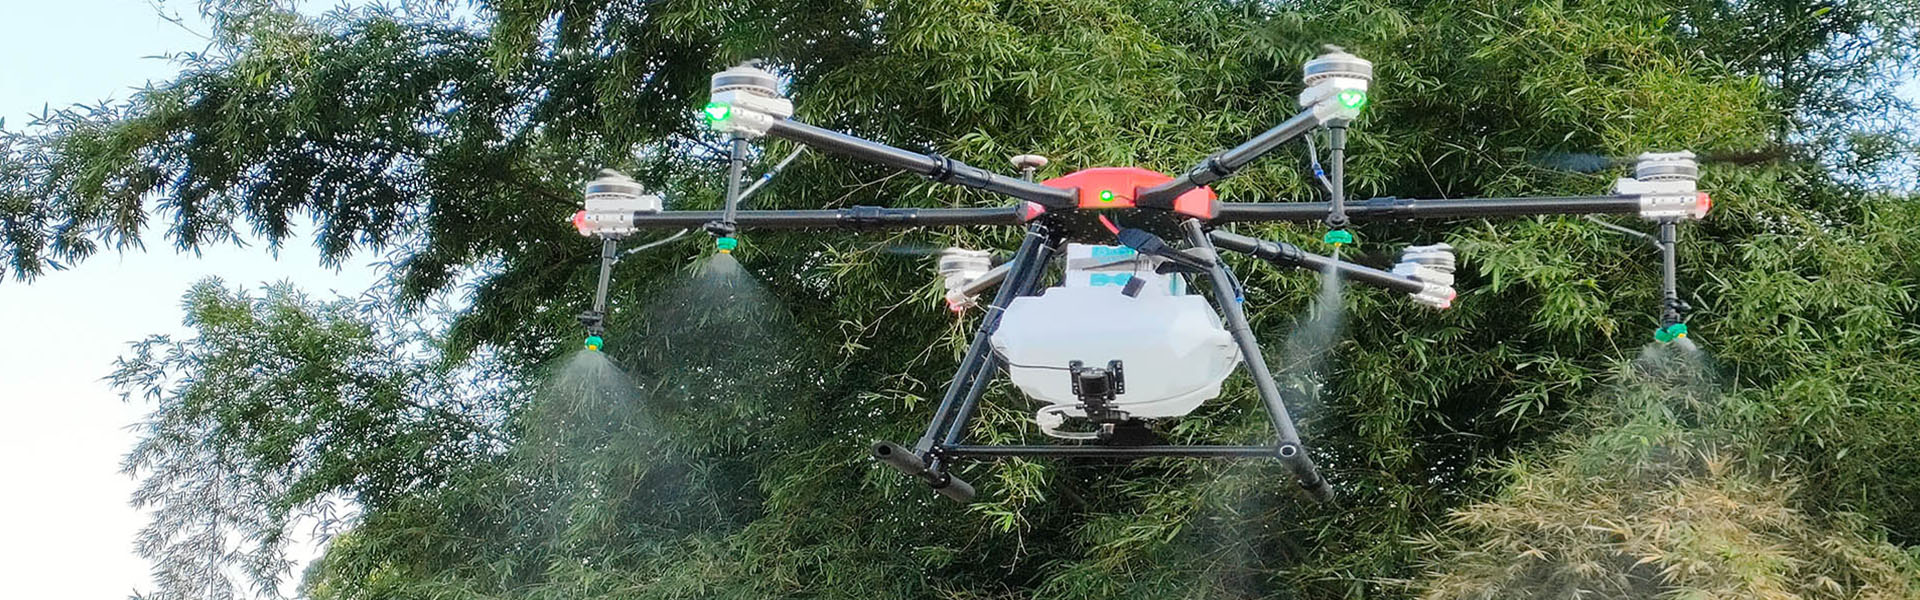 UAV agrícola, proteção de plantas UAV, acessórios Agrícolas de UAV,Shenzhen fnyuav technology co.LTD